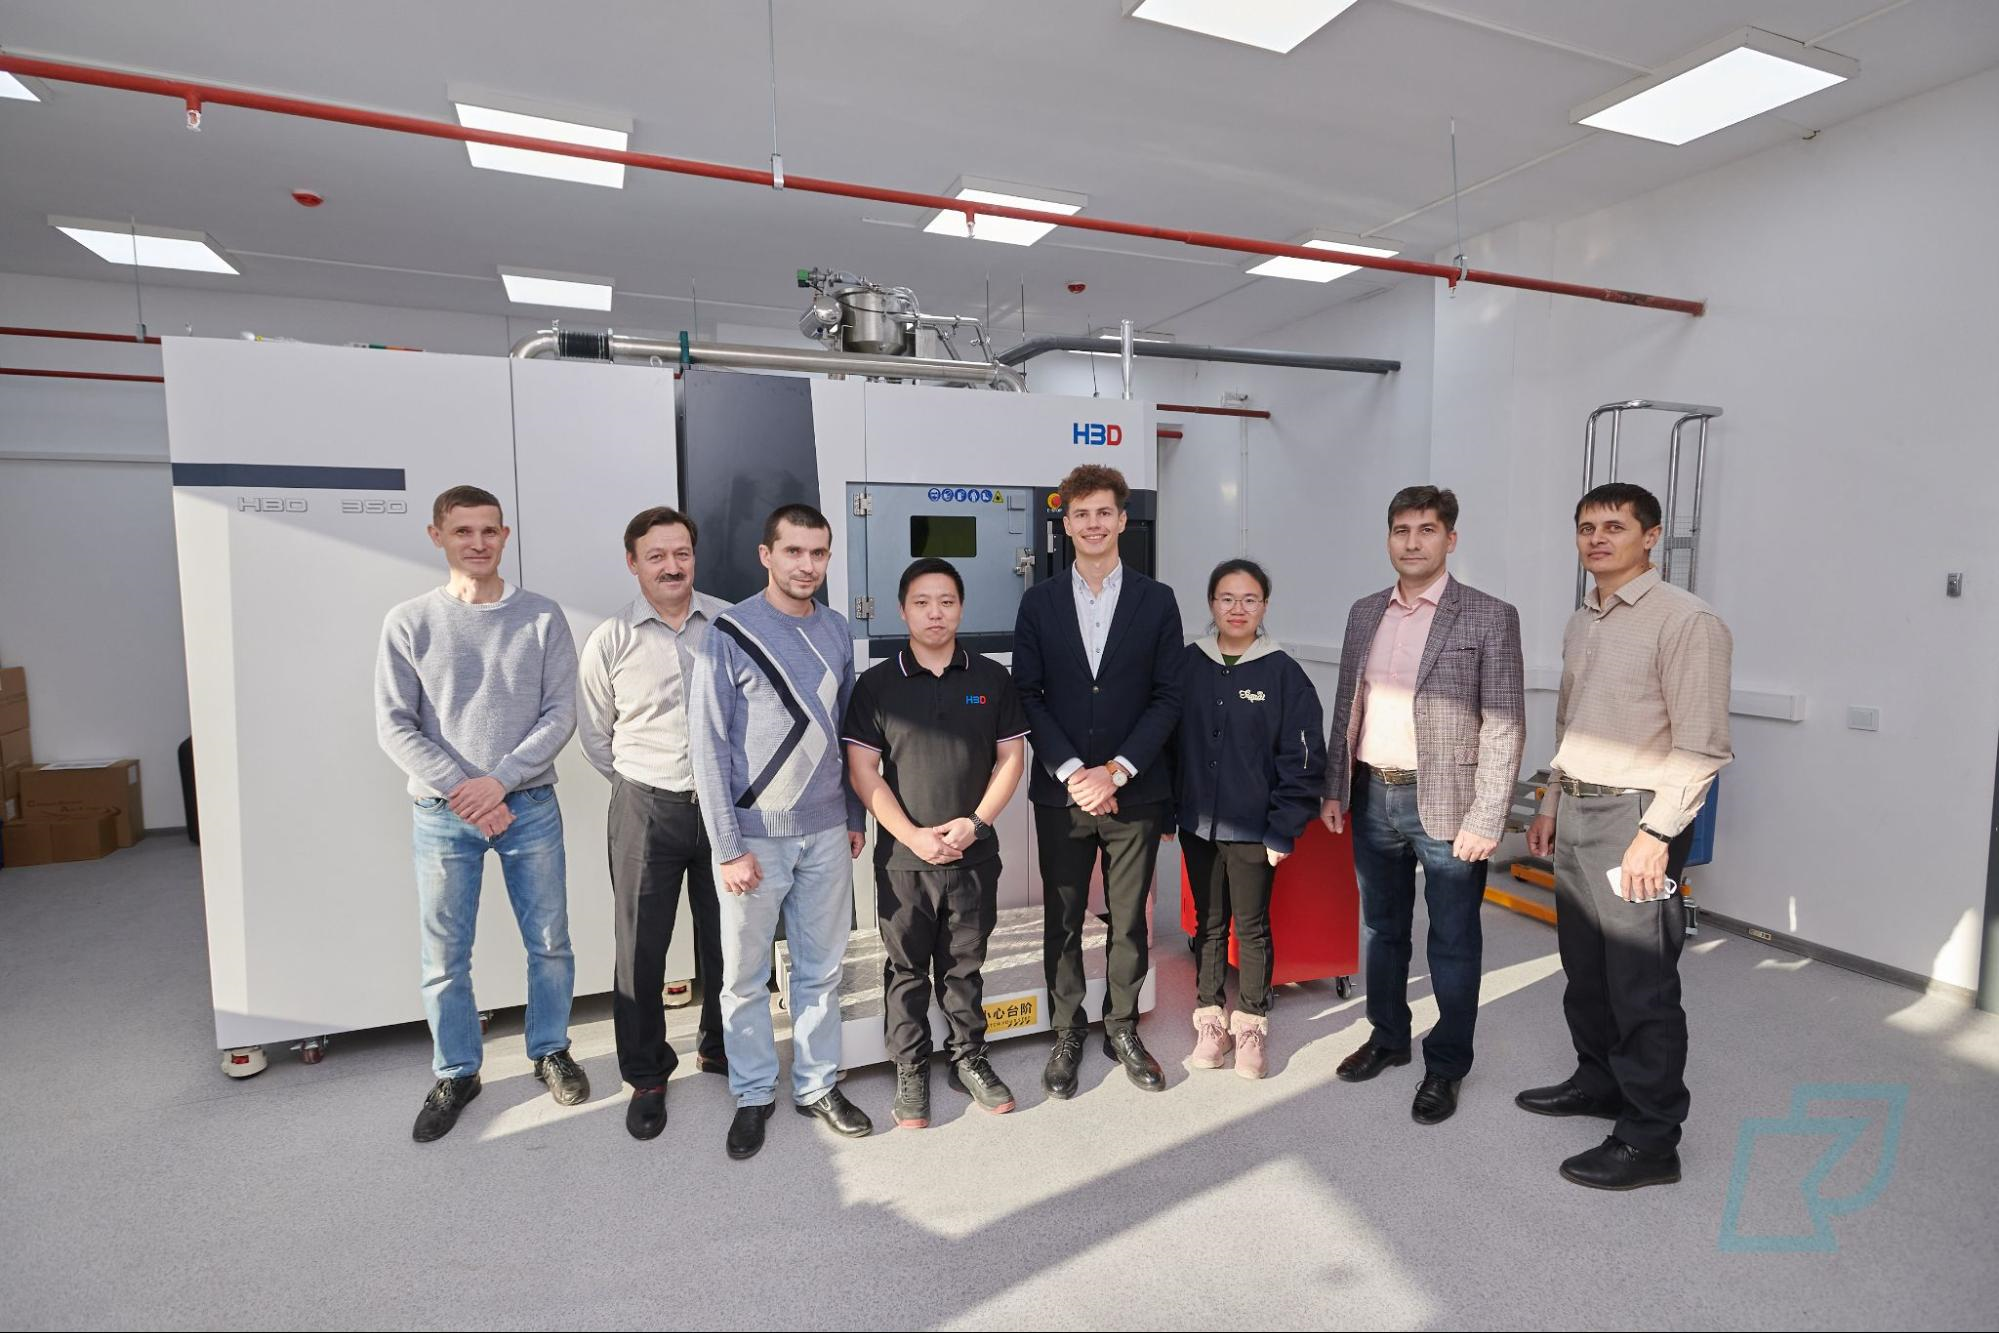 Kazakhstan Receives First Industrial Metal 3D Printer
